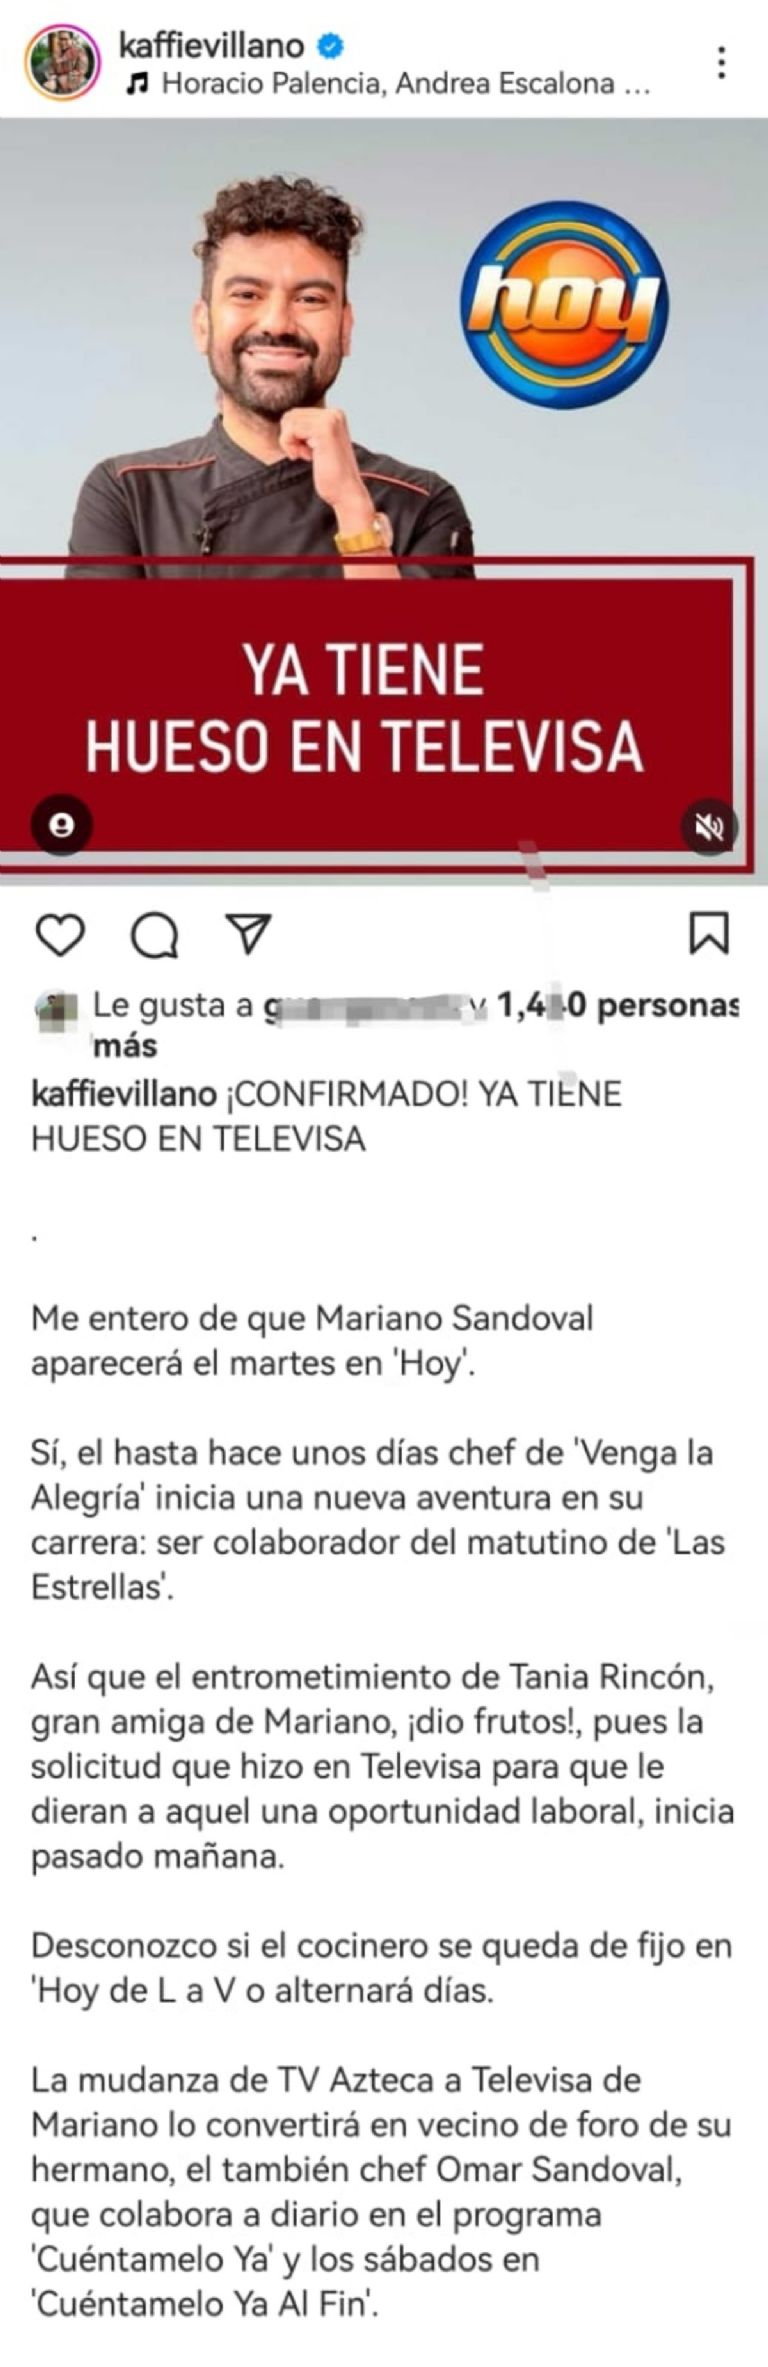 Chef Mariano ingresa a Hoy en Televisa